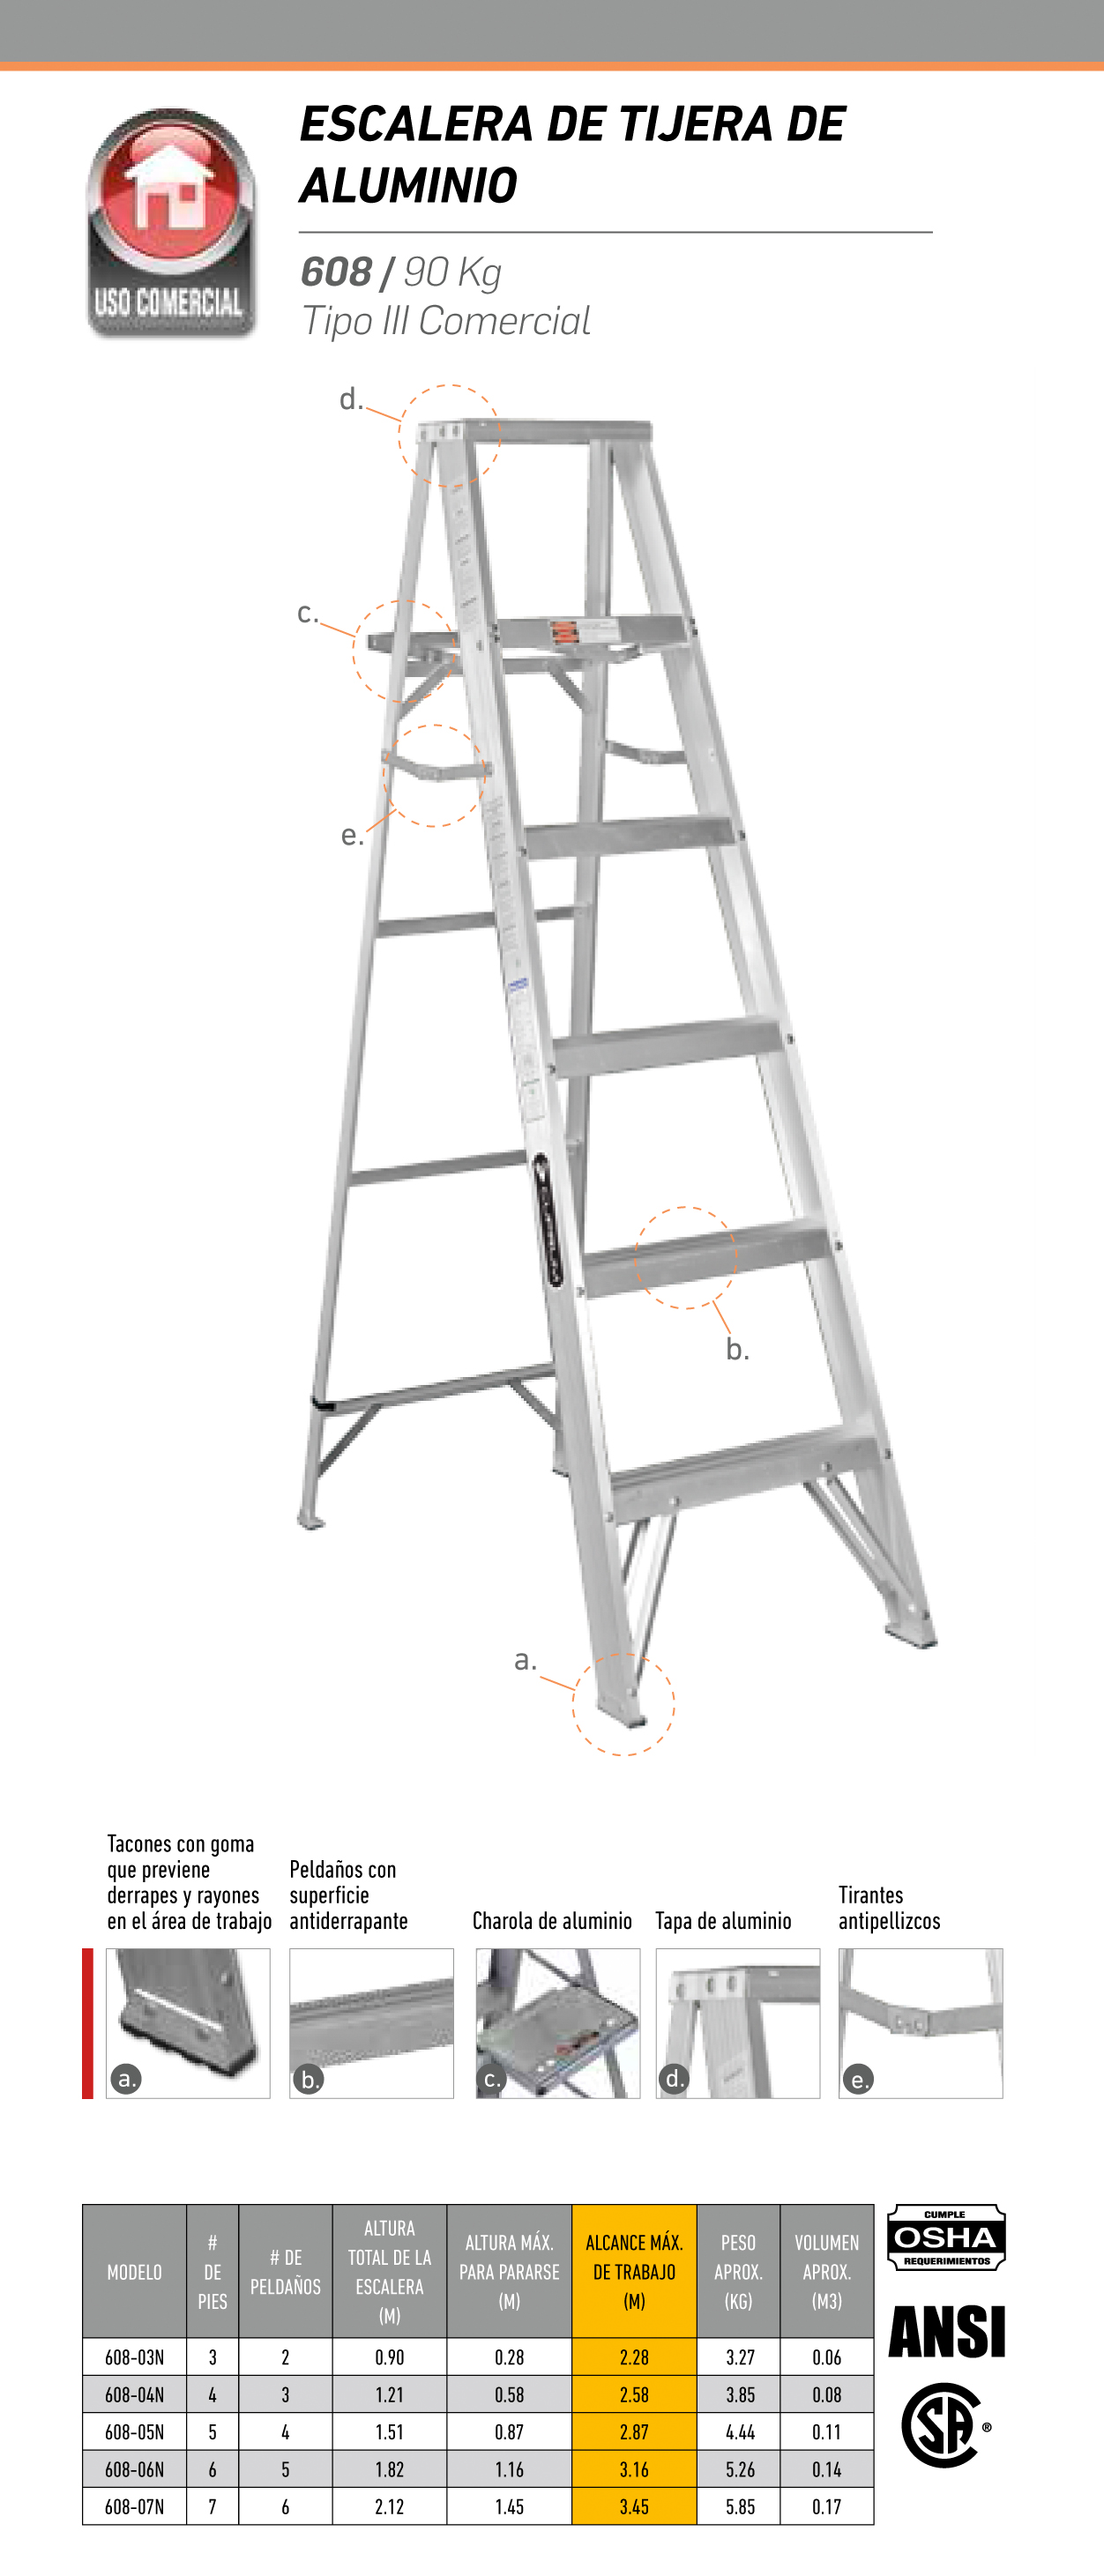 Escalera de tijera de 5 peldaños de aluminio, CUPRUM 608-06N